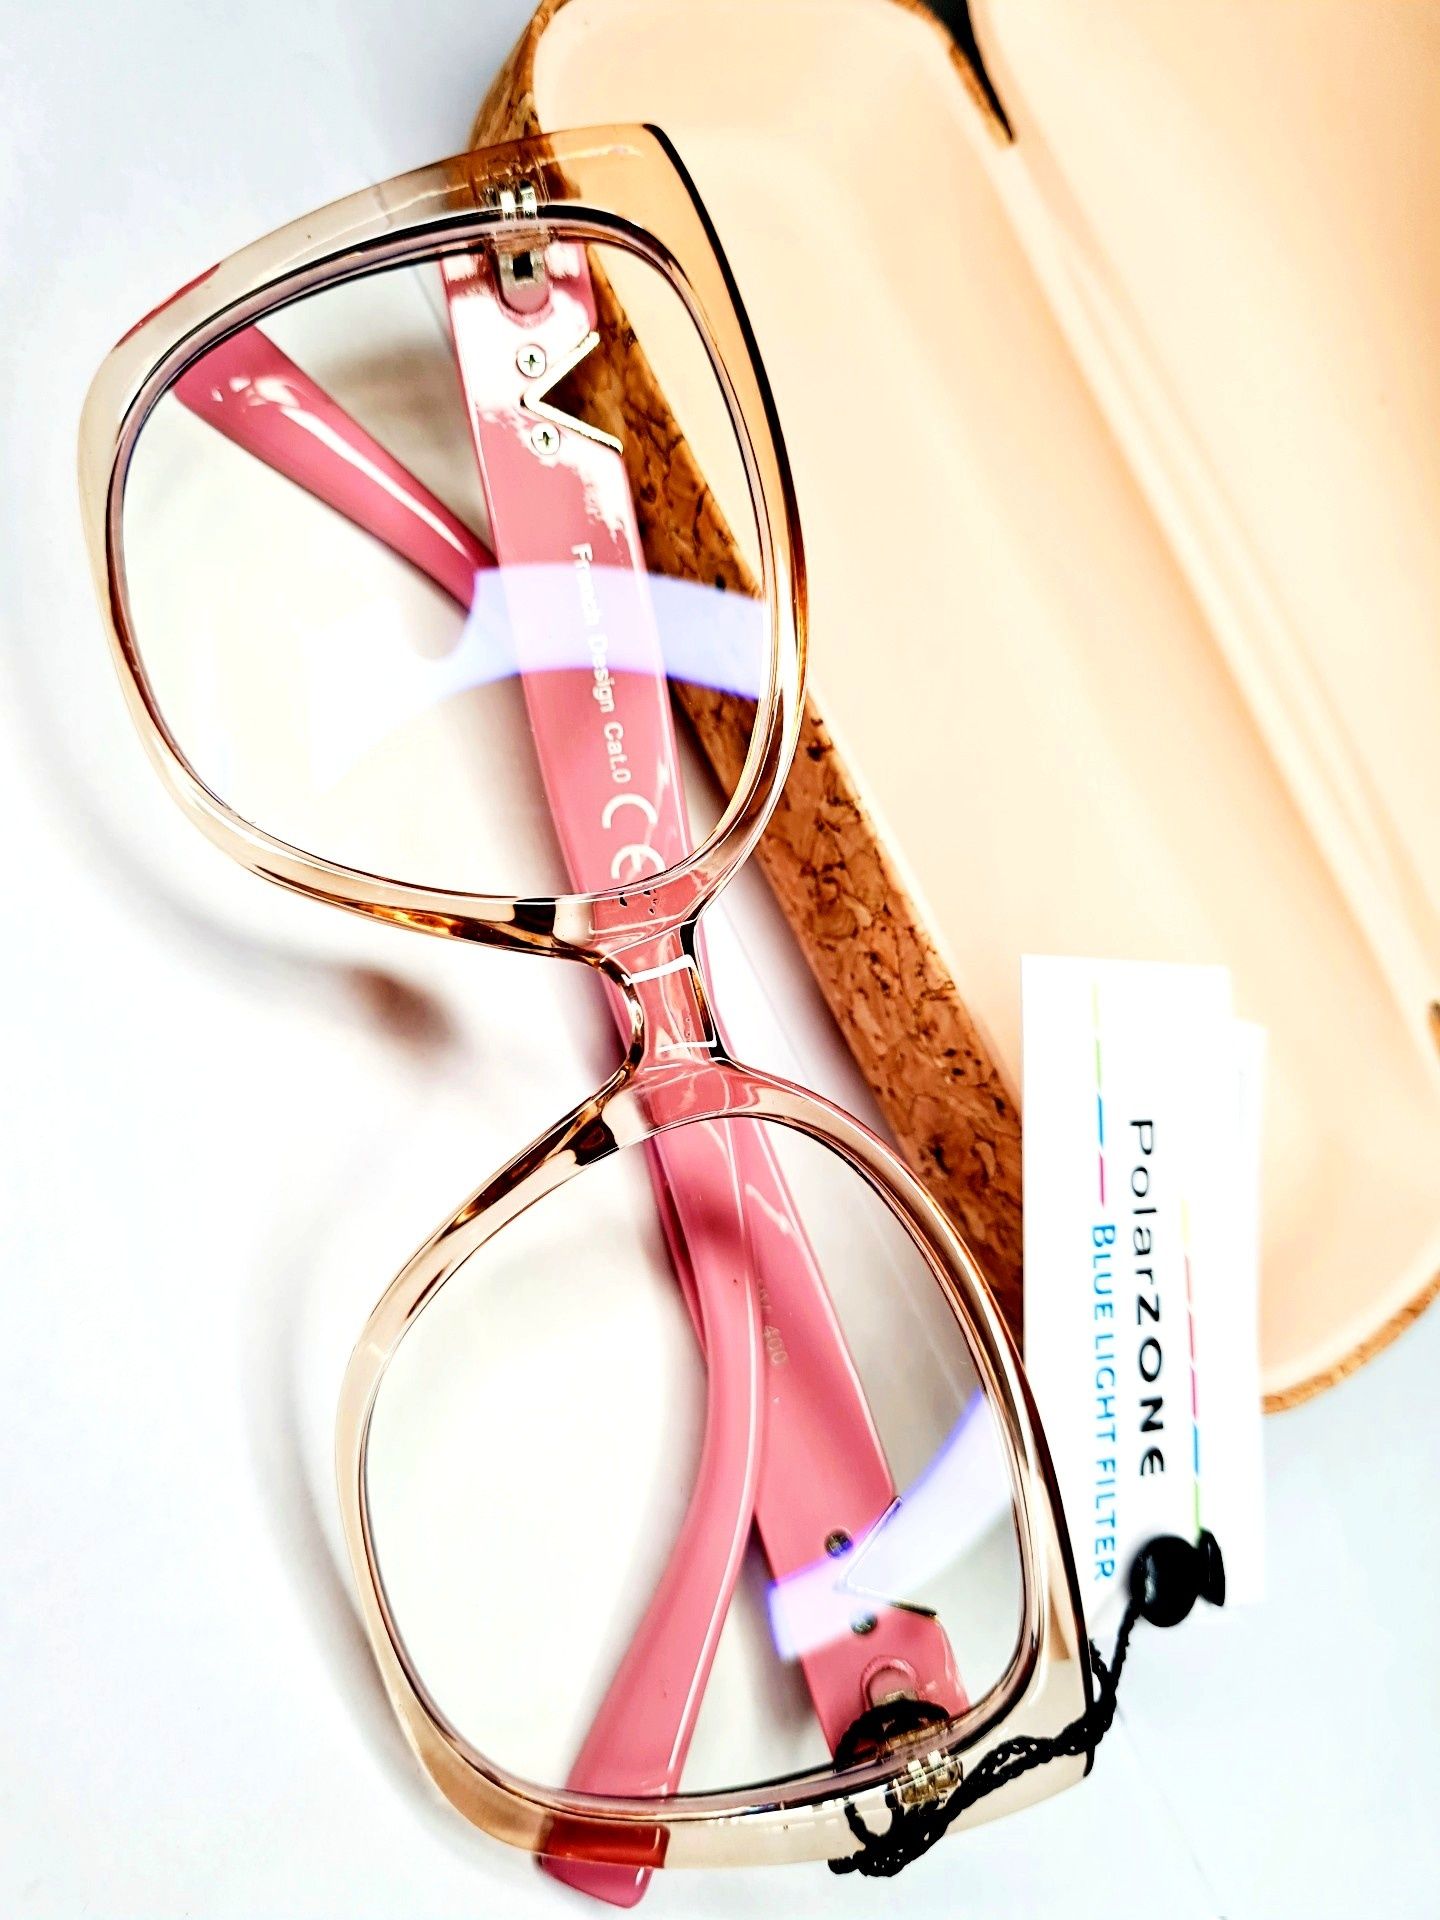 Nowe modne okulary do komputera zerówki marki Polarzone róż damskie